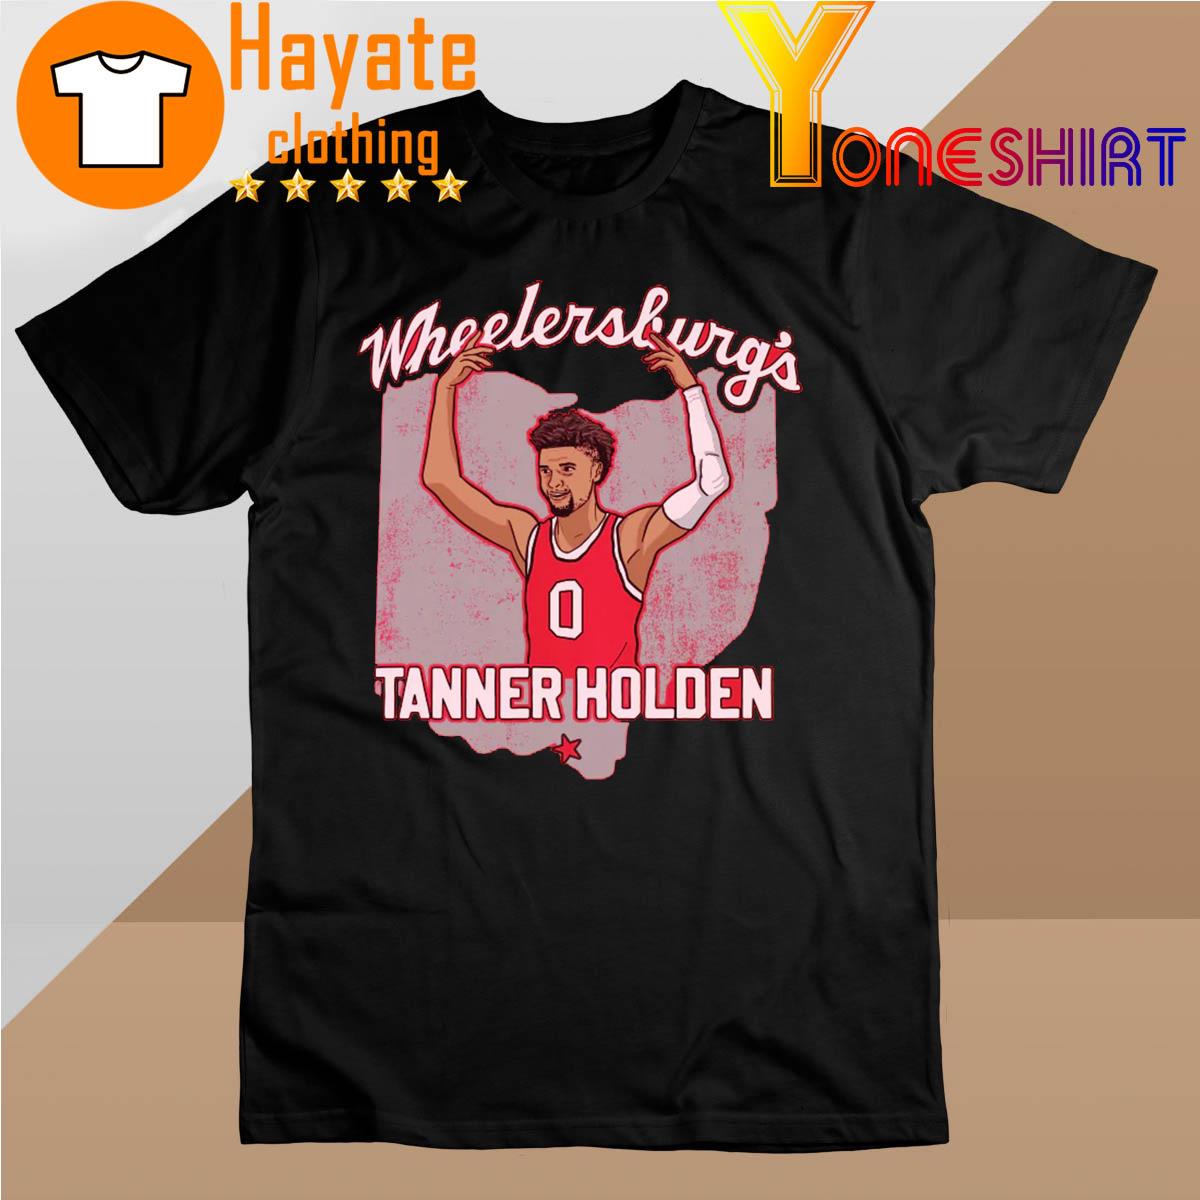 Wheelersburg's Tanner Holden shirt